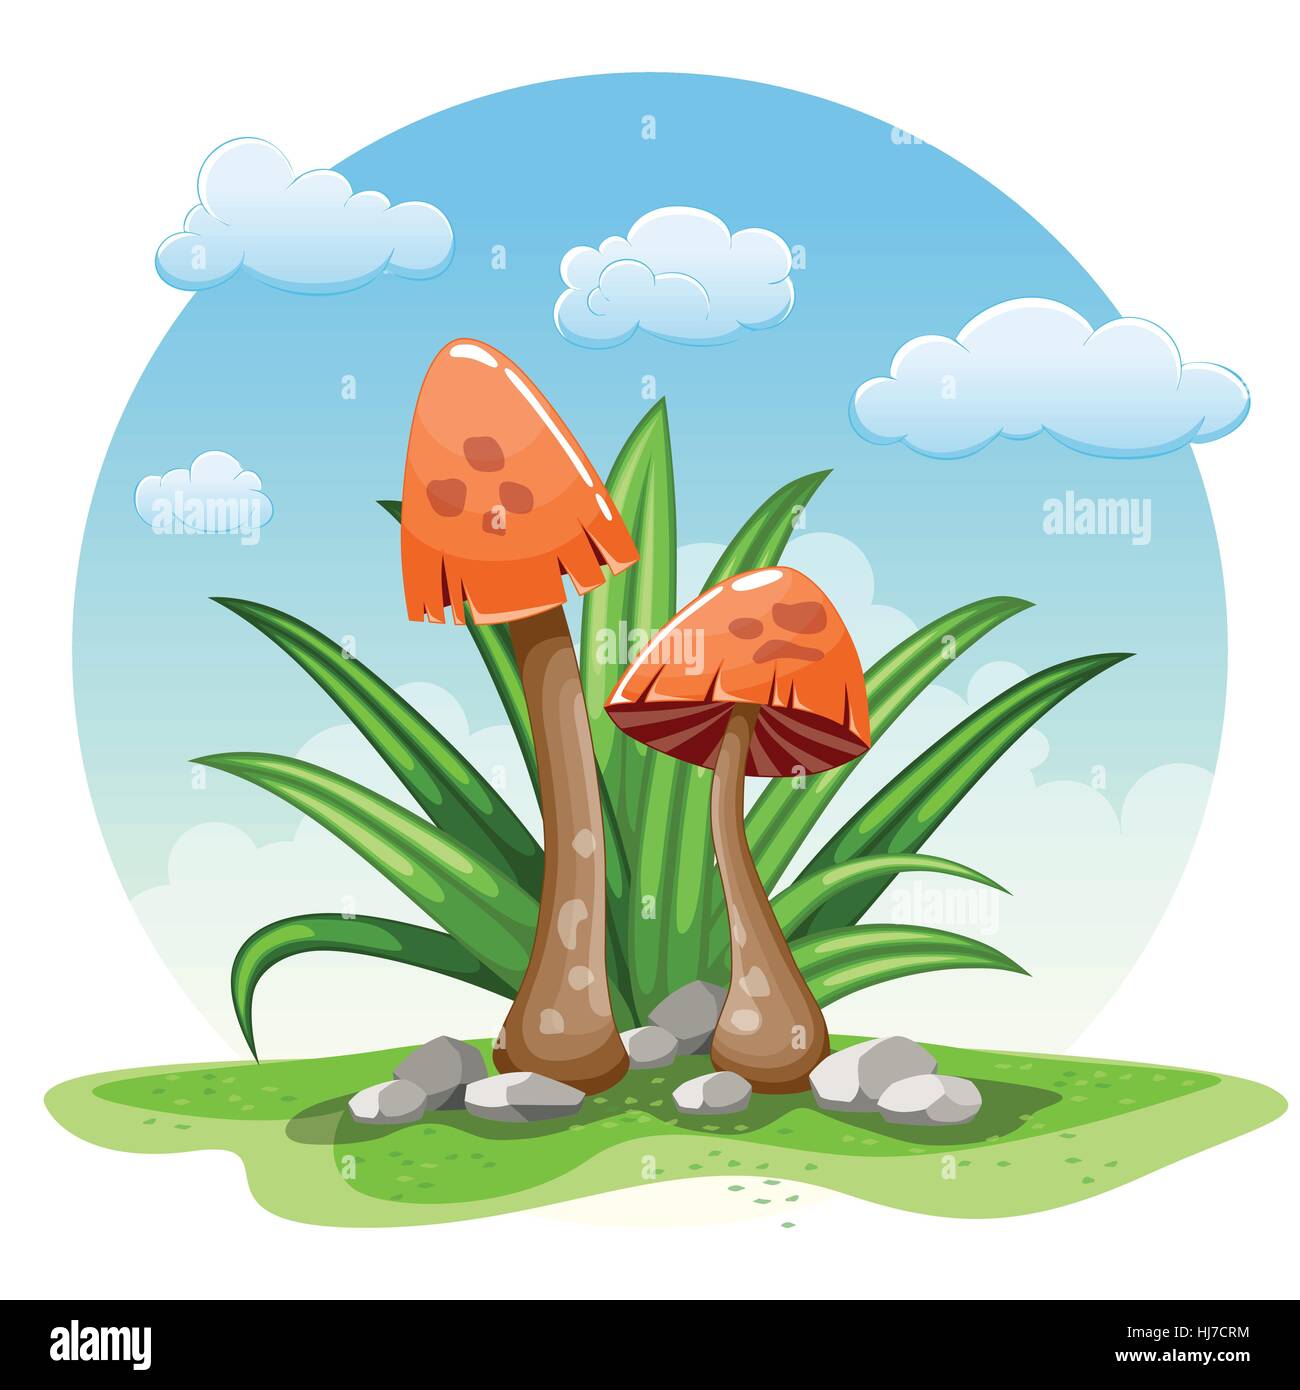 Illustrazione di cartoon funghi contro uno sfondo bianco Illustrazione Vettoriale